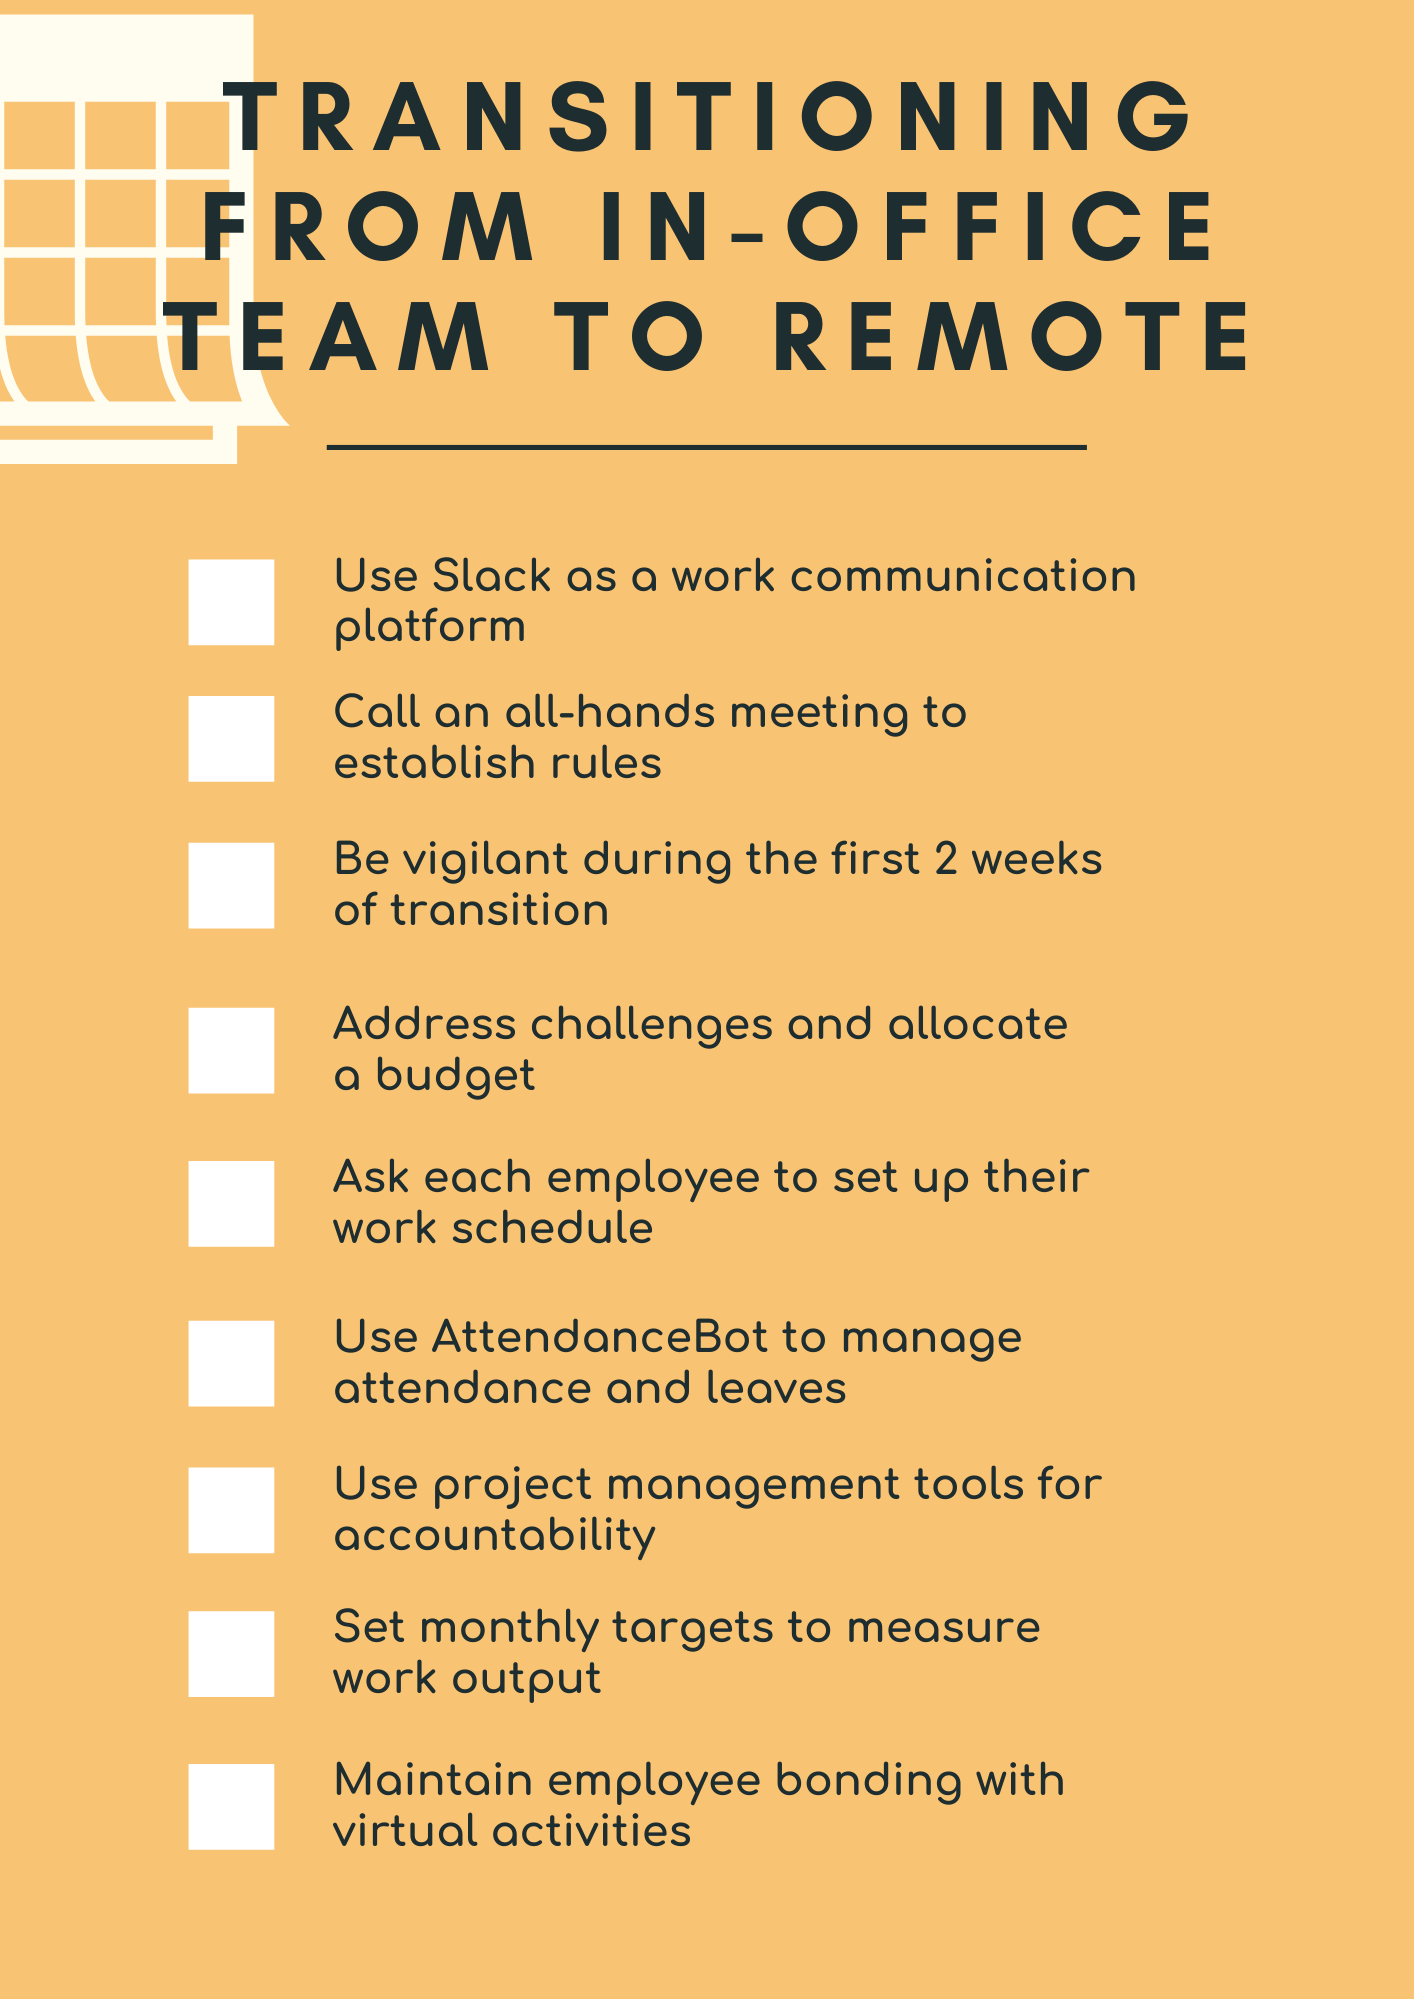 Best Ways to Take a Break When Working Remote